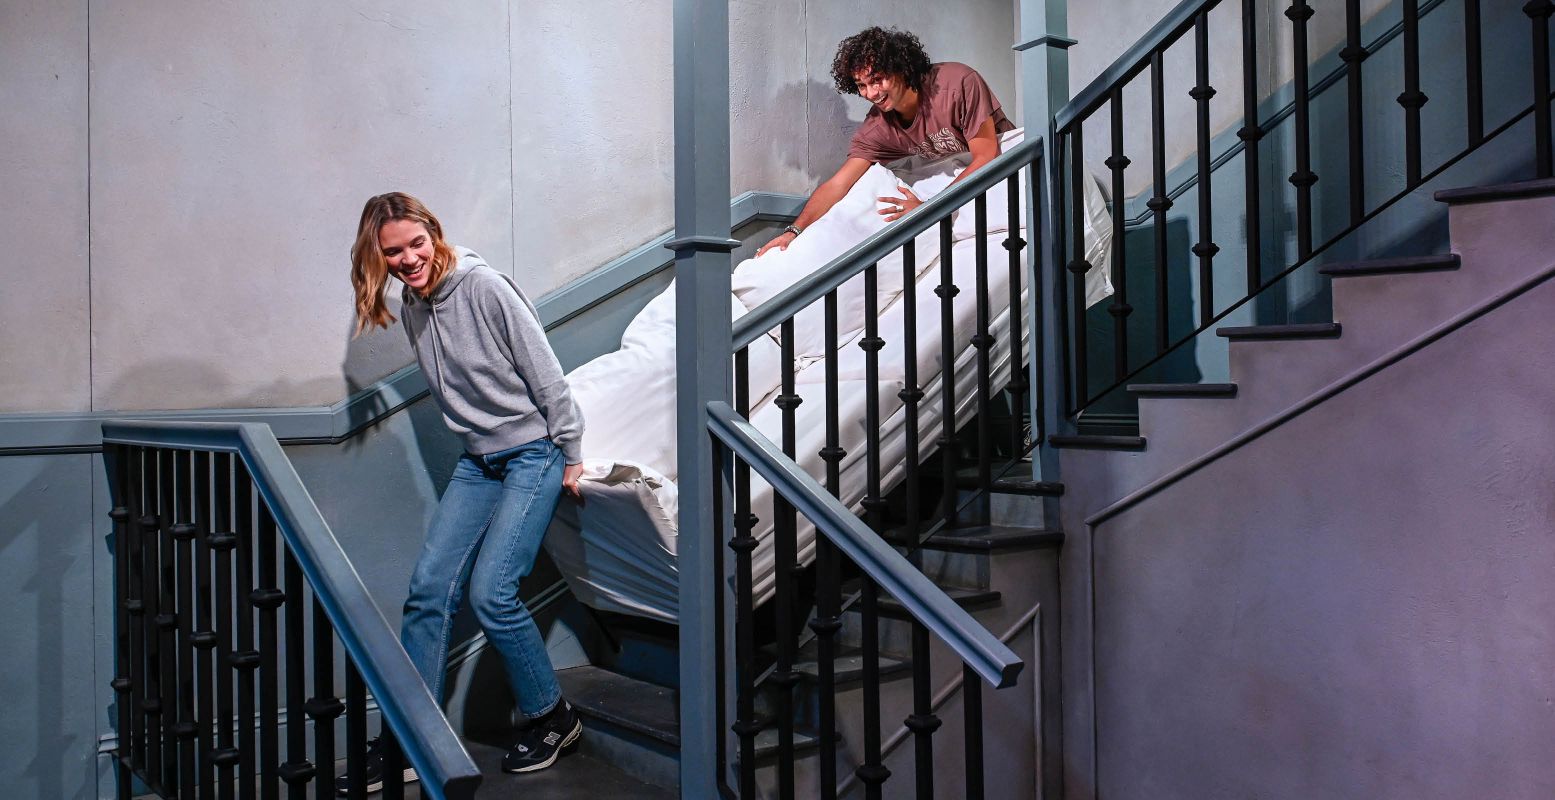 Paste de bank van Ross echt niet door het trappenhuis heen? Foto: The FRIENDS Experience